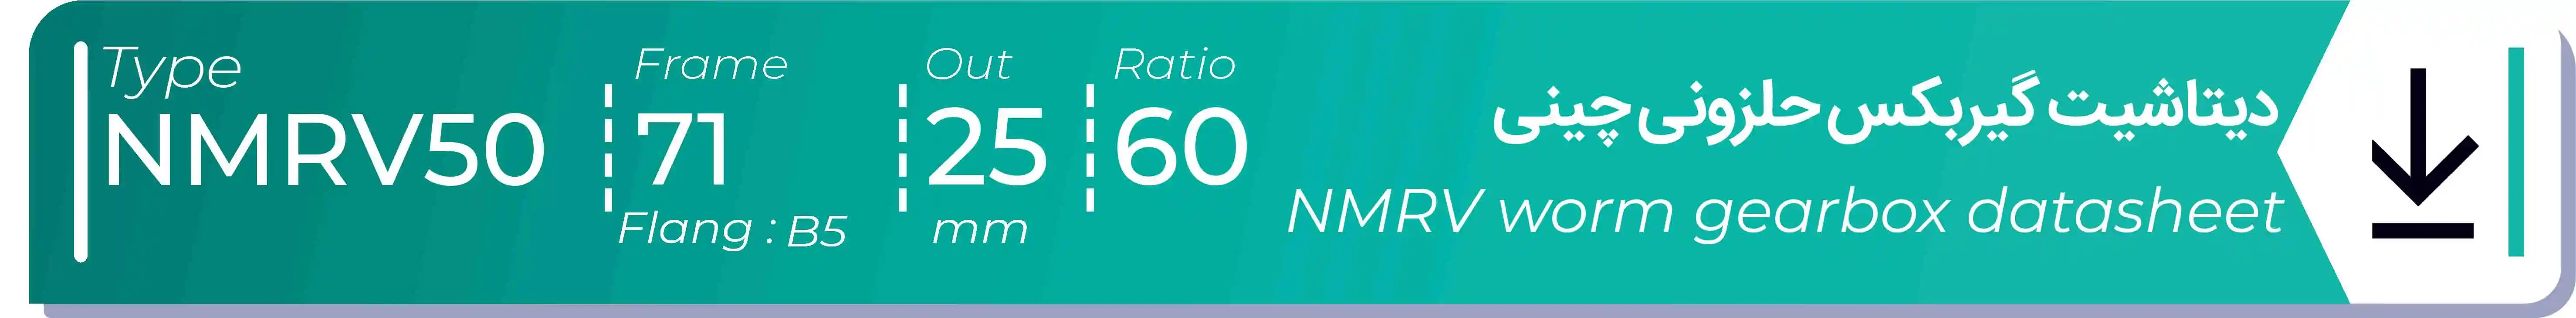  دیتاشیت و مشخصات فنی گیربکس حلزونی چینی   NMRV50  -  با خروجی 25- میلی متر و نسبت60 و فریم 71